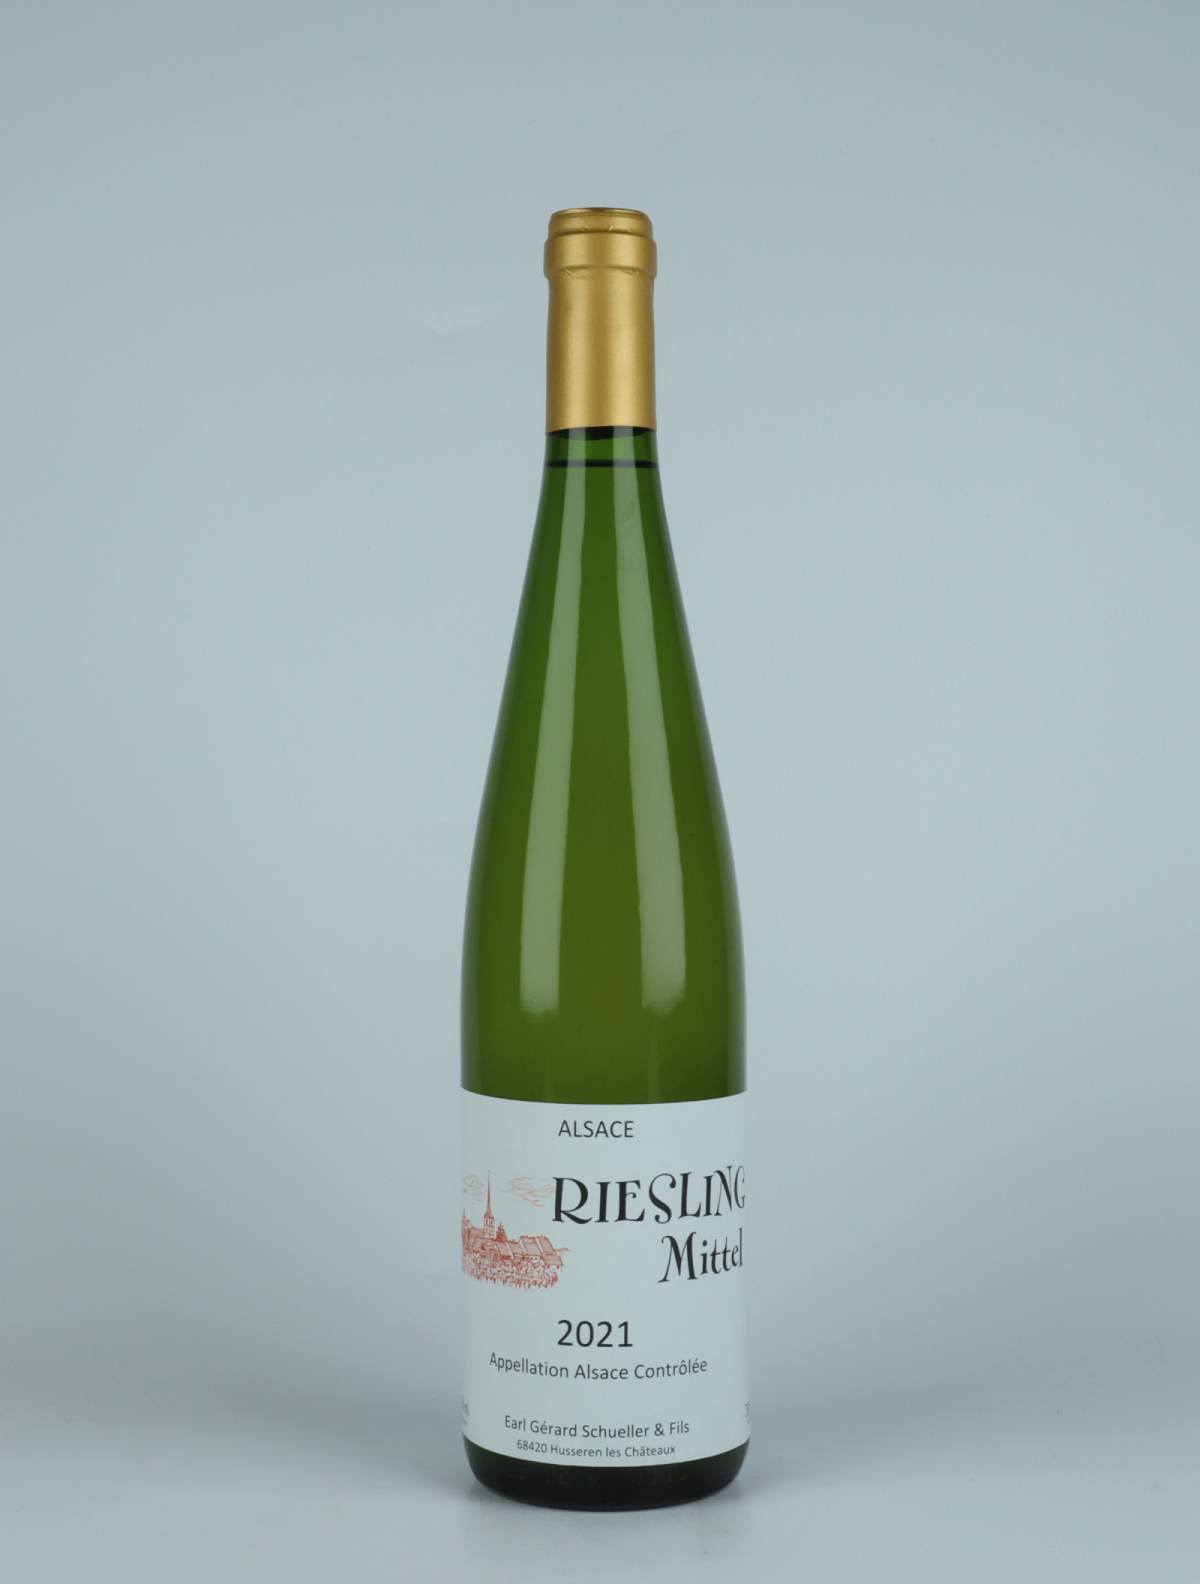 En flaske 2021 Riesling - Mittel Hvidvin fra Gérard Schueller, Alsace i Frankrig